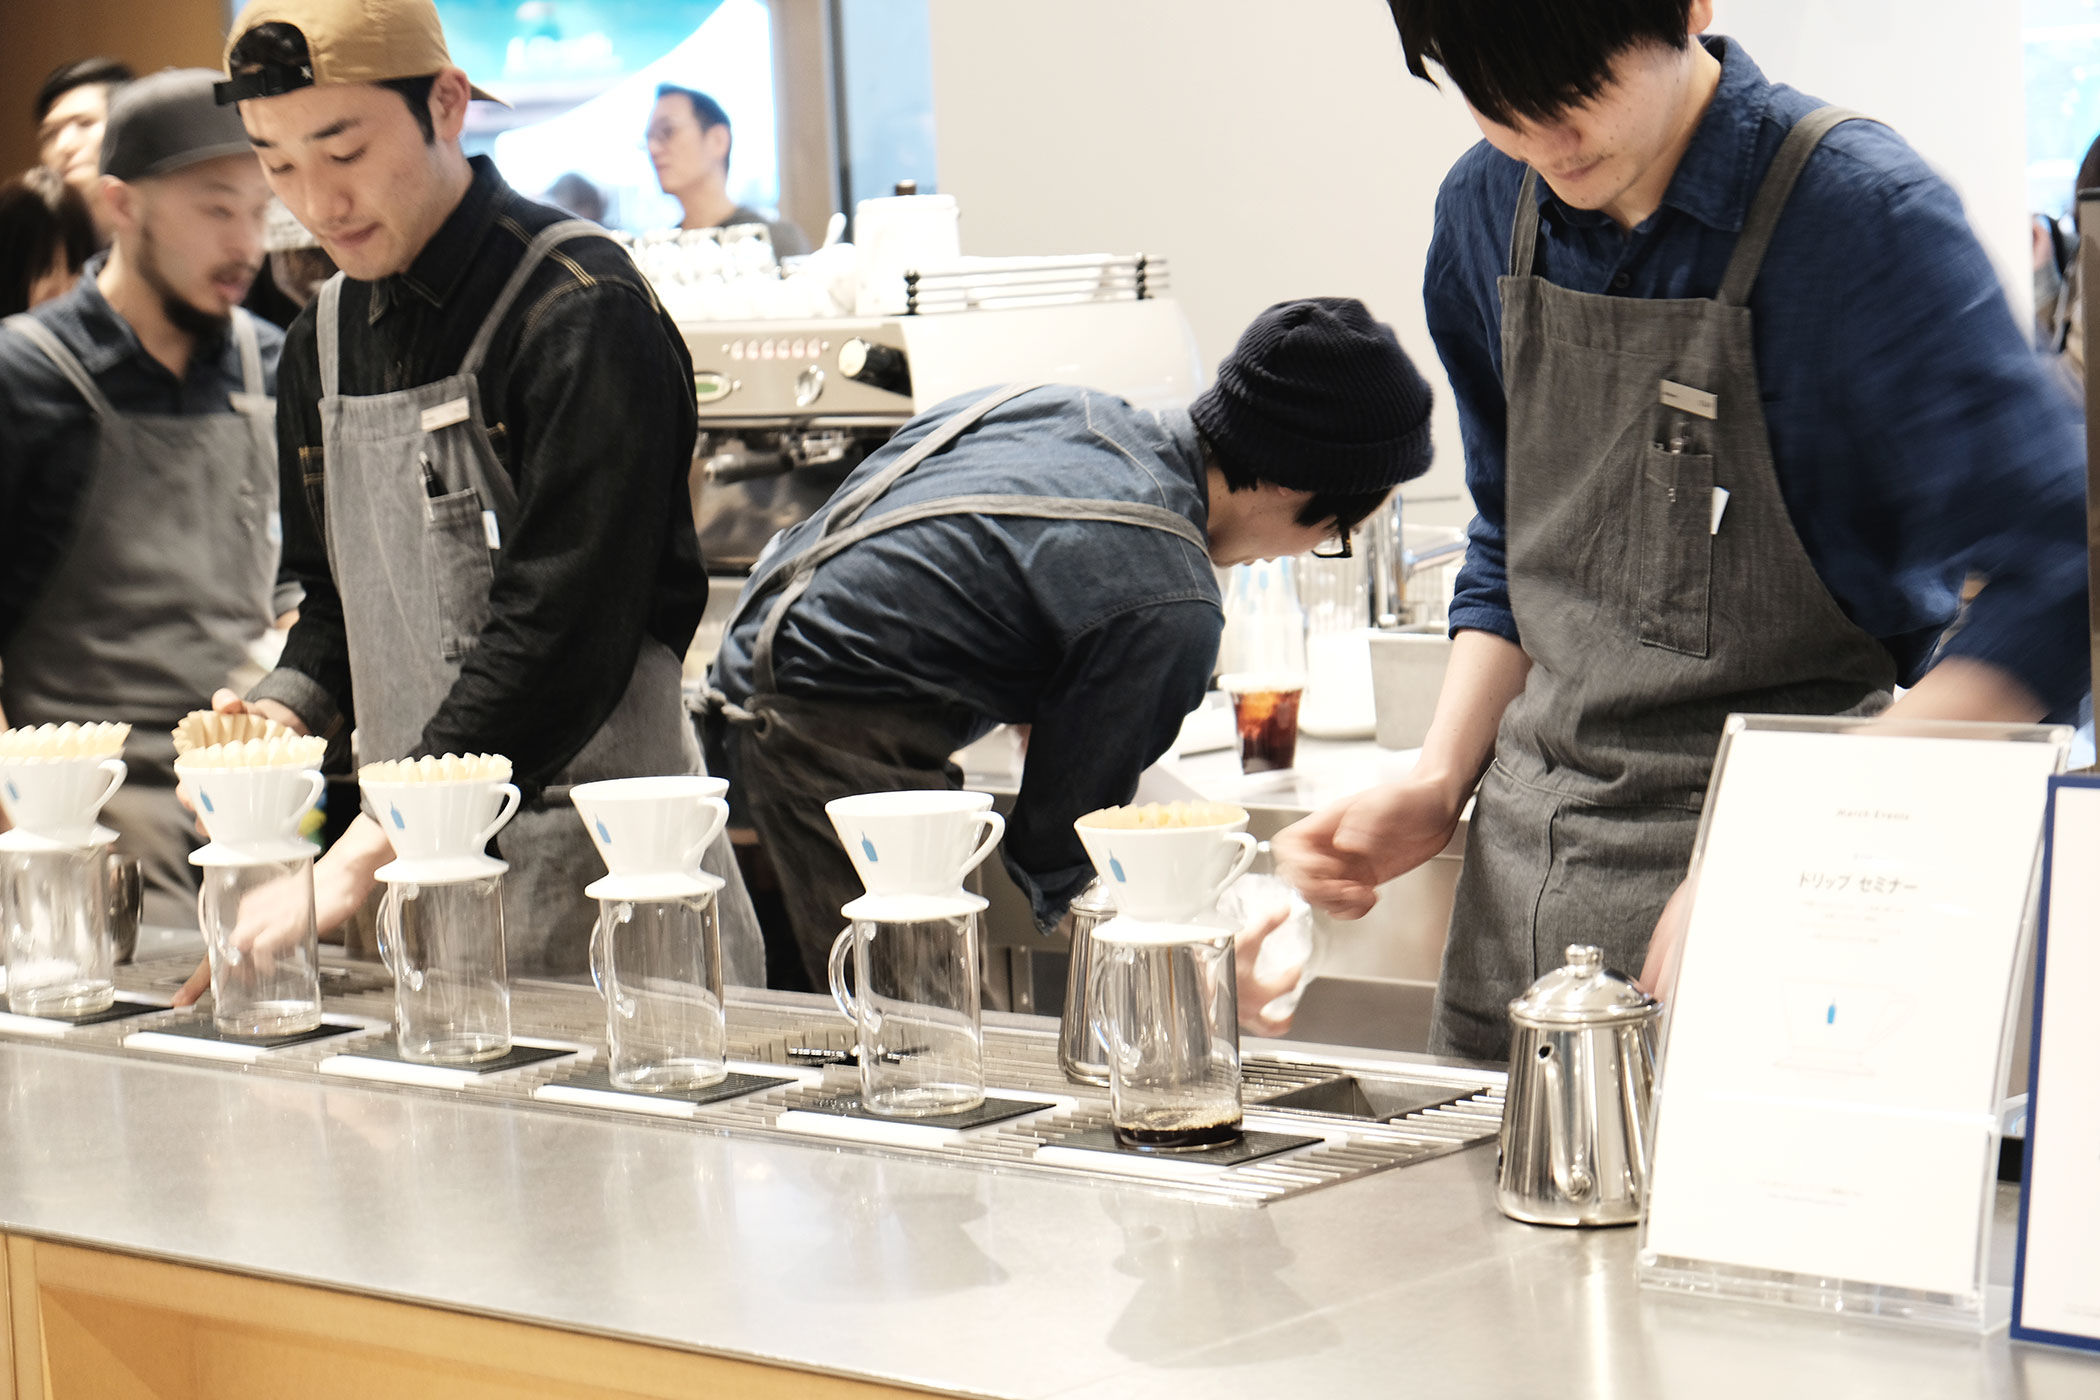 ブルーボトルコーヒー 新宿カフェ NEWoMAN内の国内3号店となるブルーボトルコーヒー